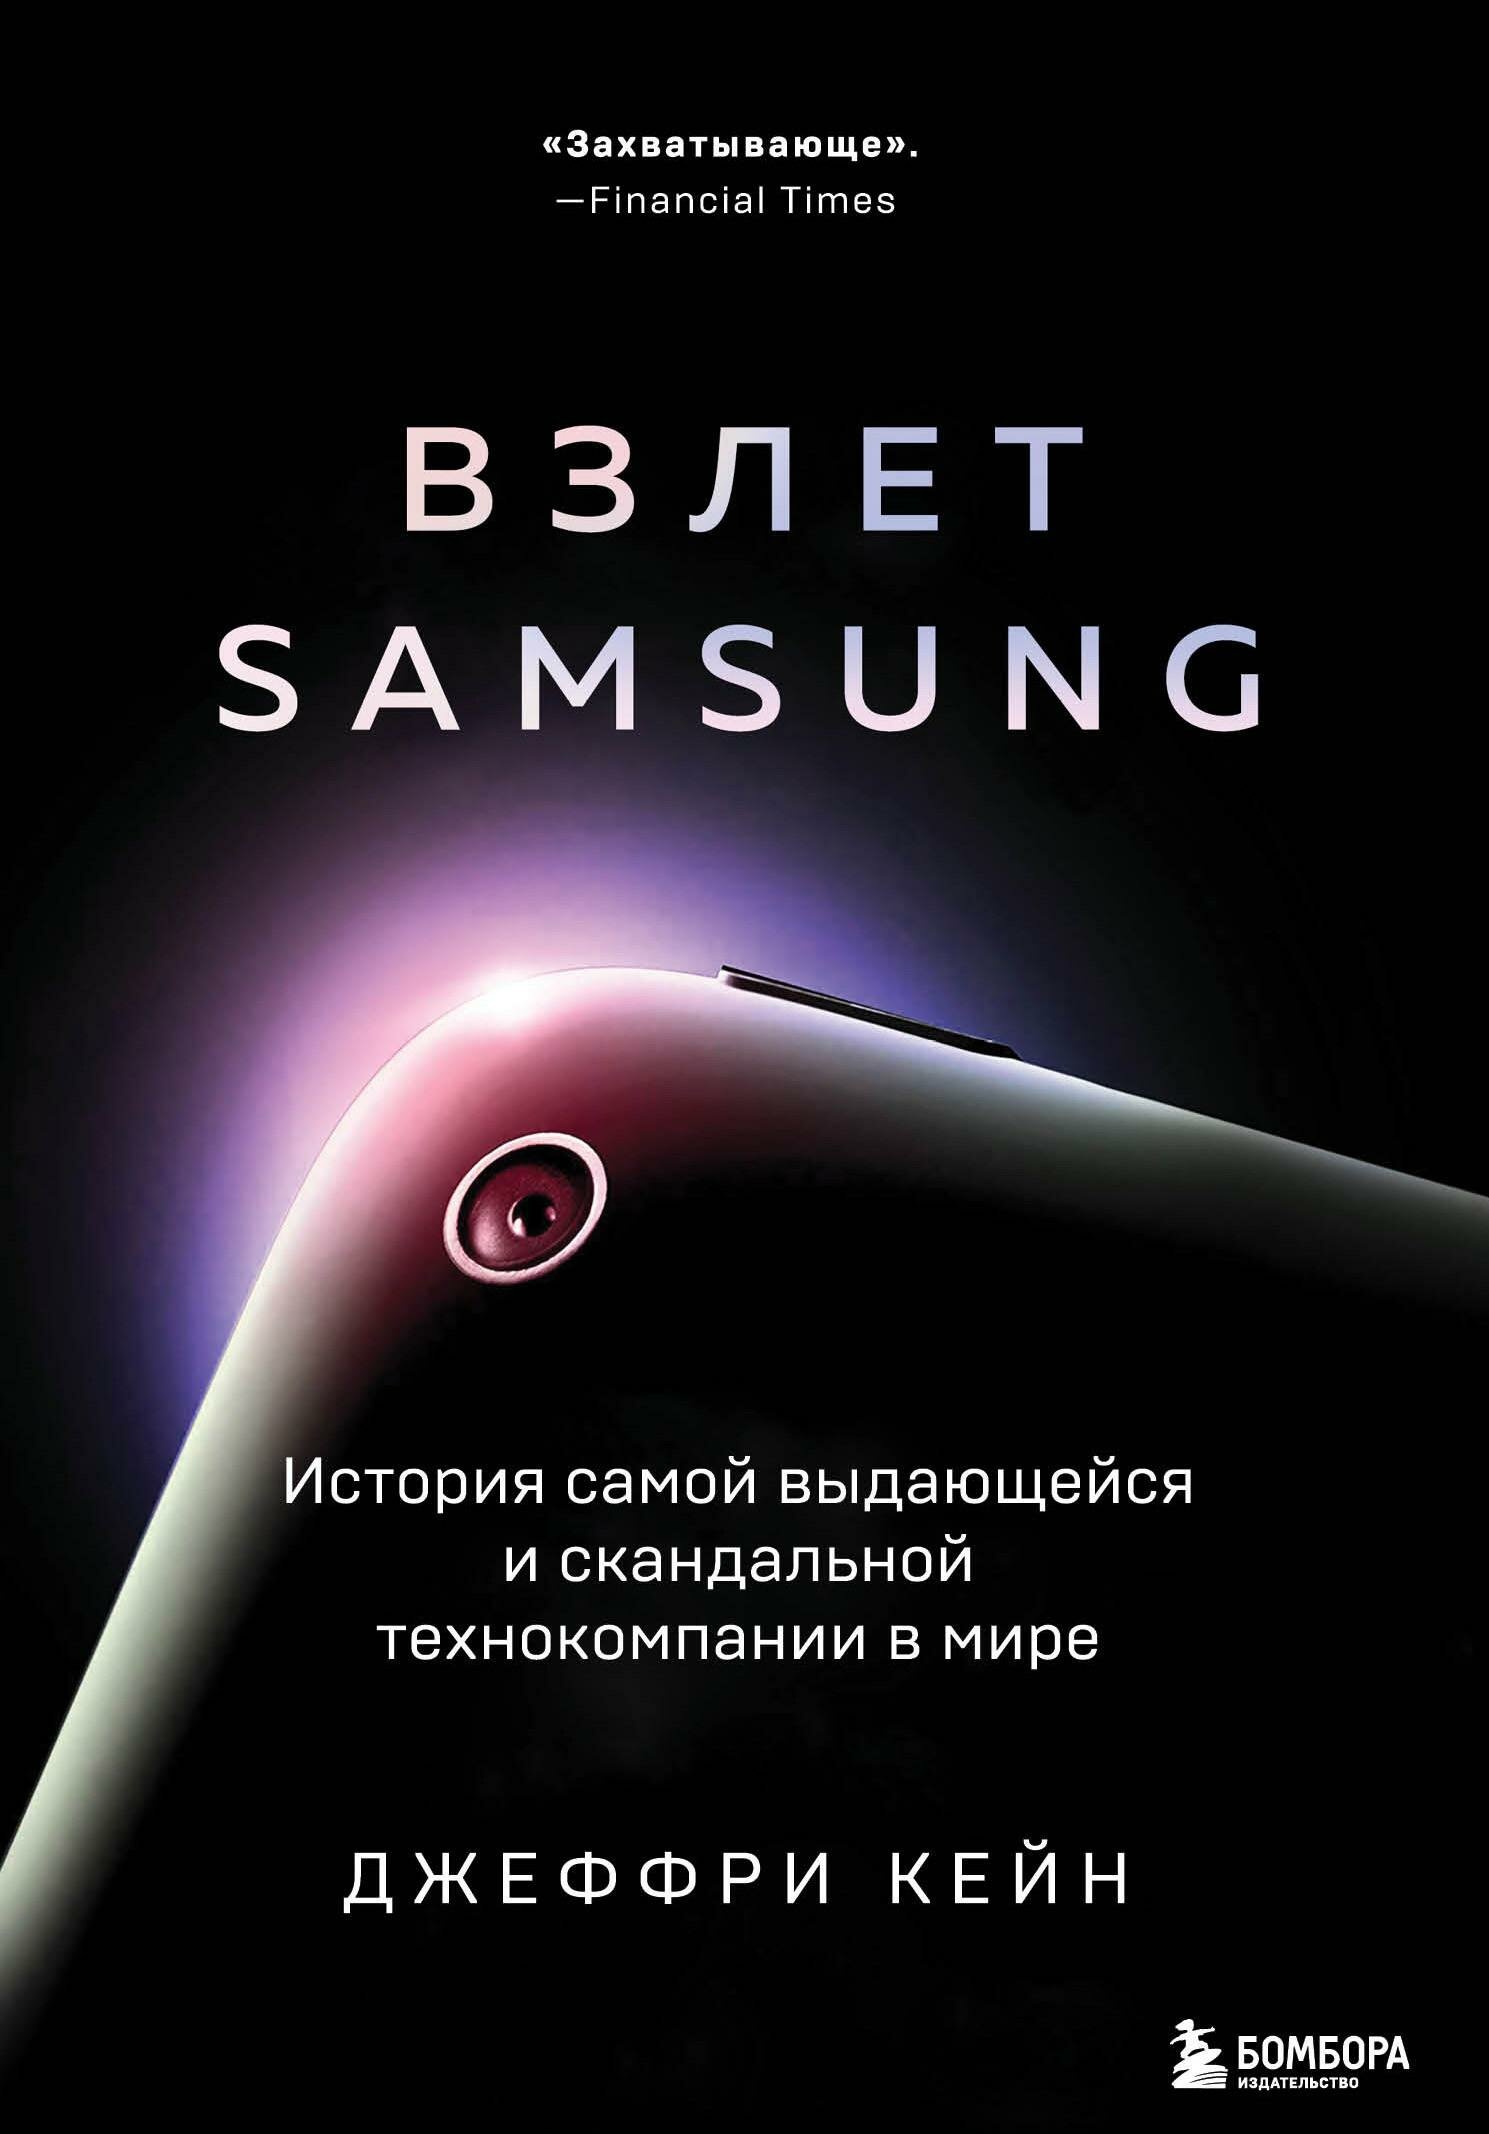 Взлет Samsung. История самой выдающейся и скандальной технокомпании в мире - фото №1